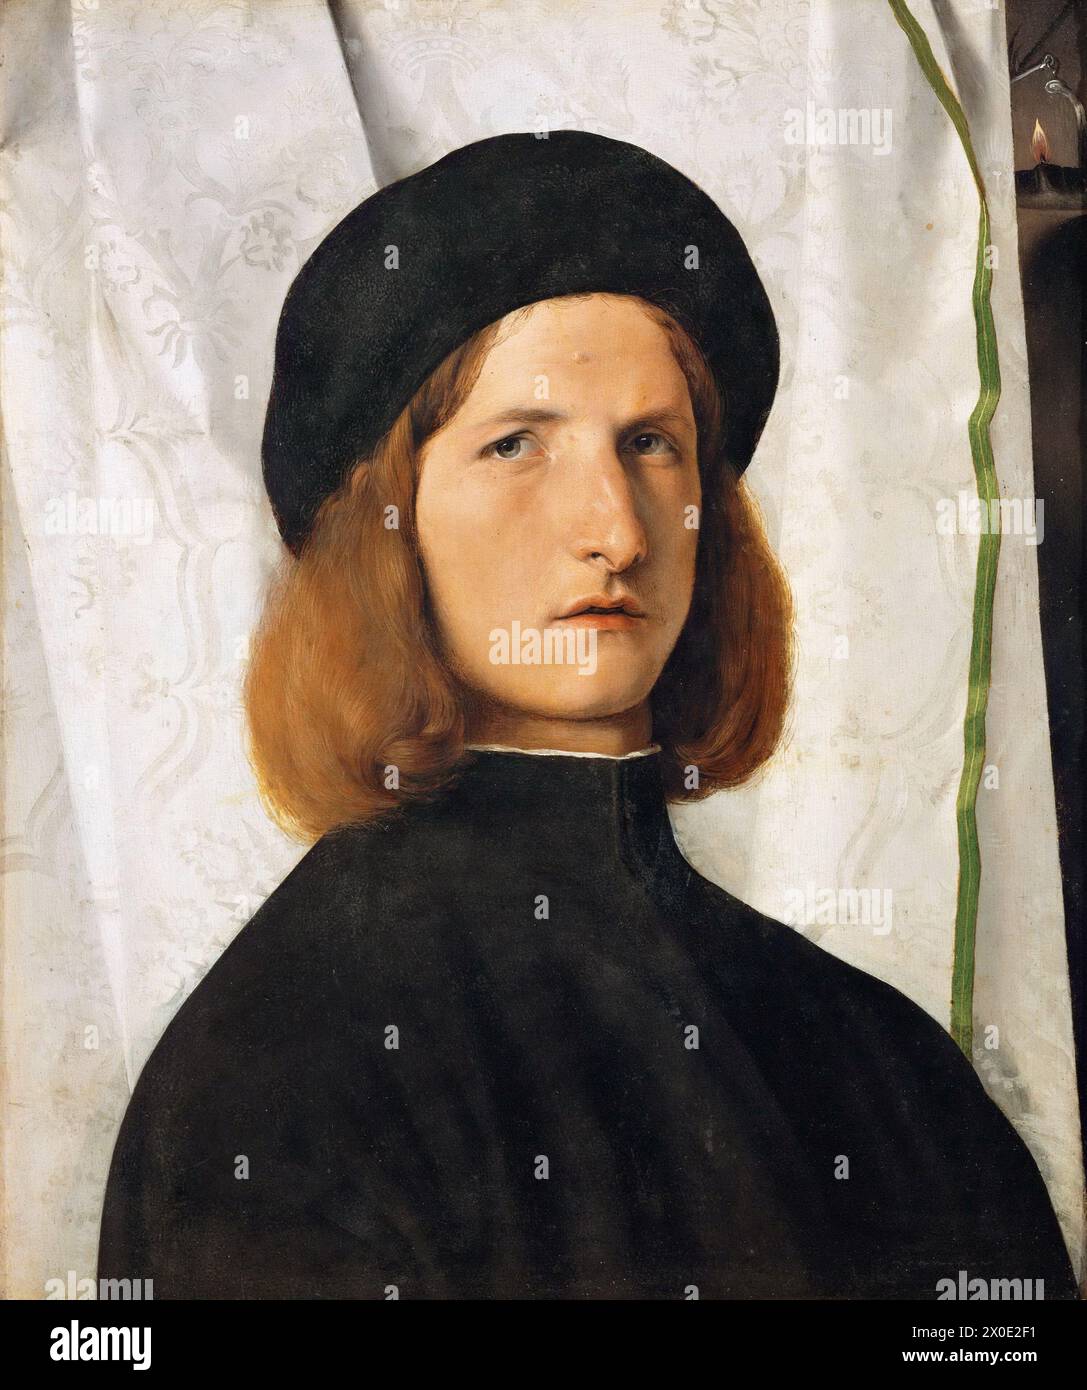 Le Portrait d'un jeune homme avec une lampe est une peinture à l'huile sur toile du peintre italien de la haute Renaissance Lorenzo Lotto, datant de vers 1506. Banque D'Images